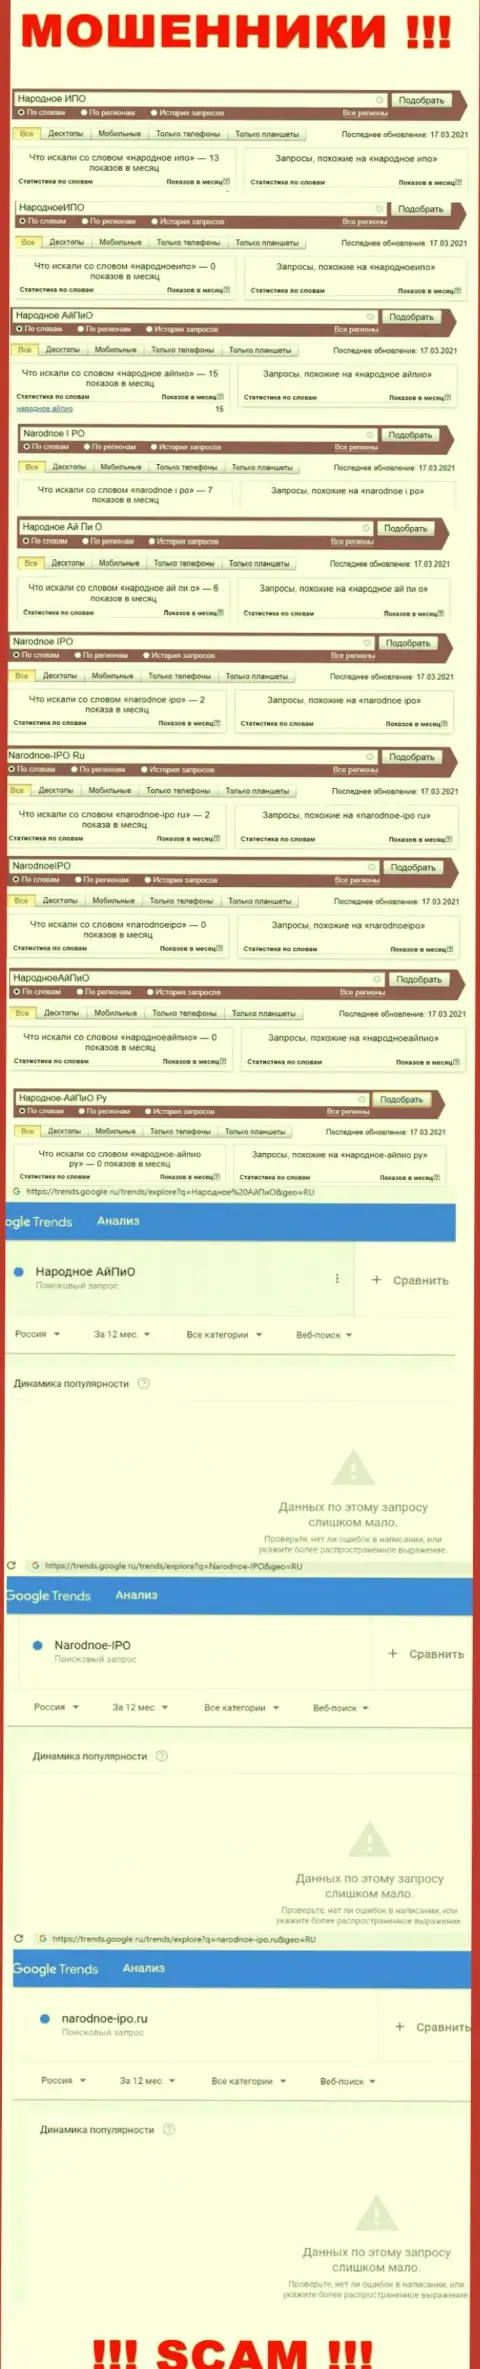 Статистические данные online запросов по бренду Narodnoe-IPO Ru в сети Интернет